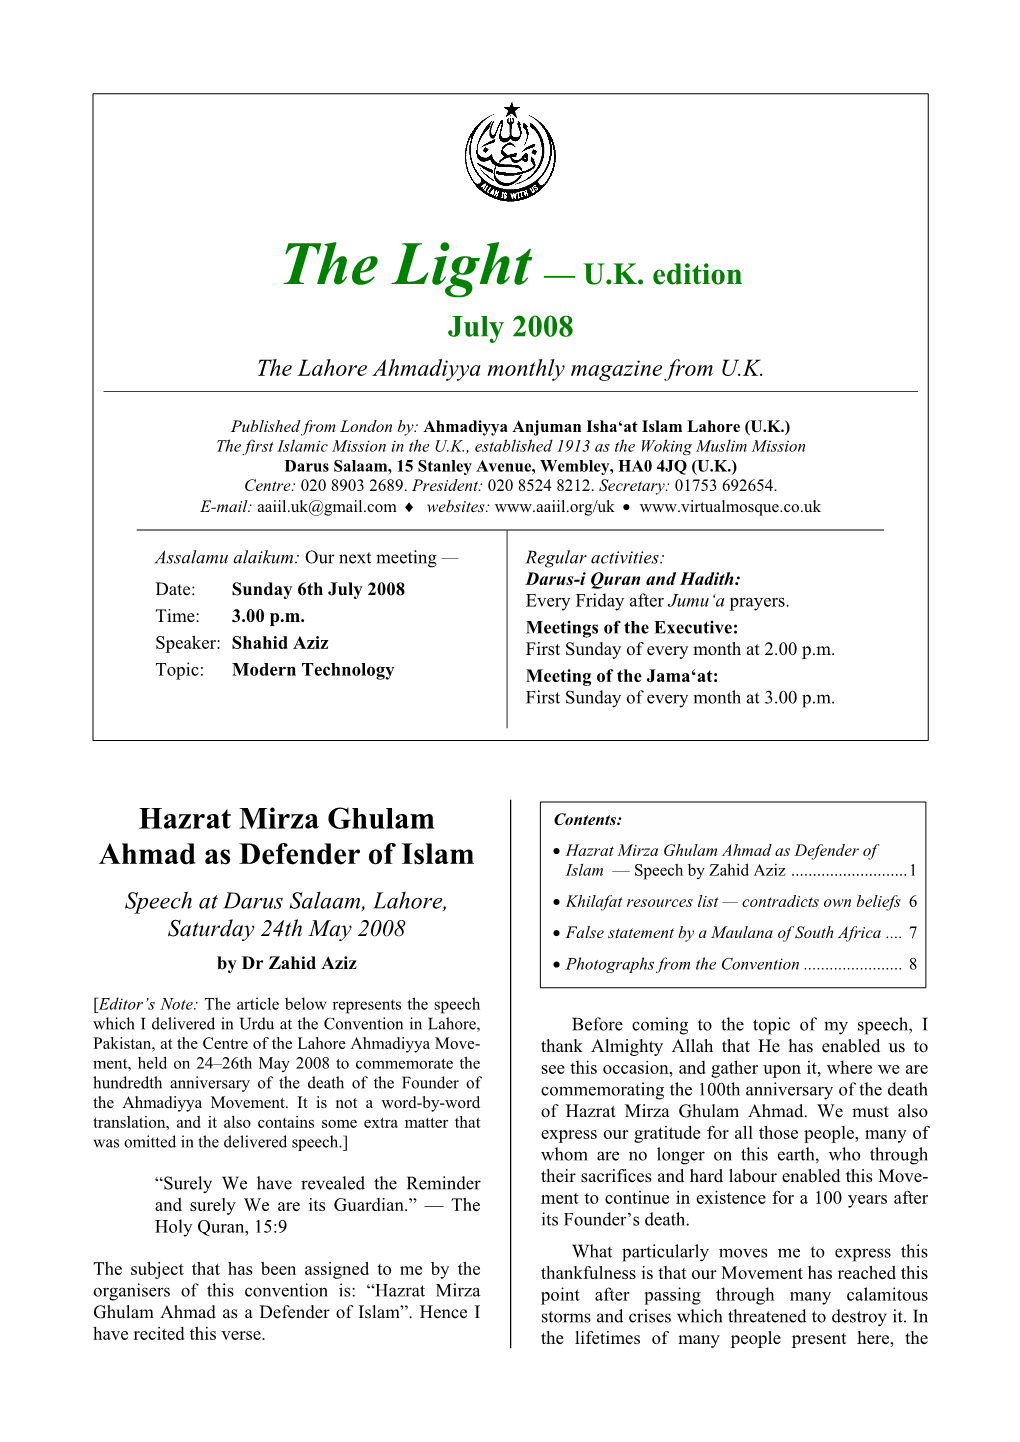 The Light, U.K. Edition, July 2008 —